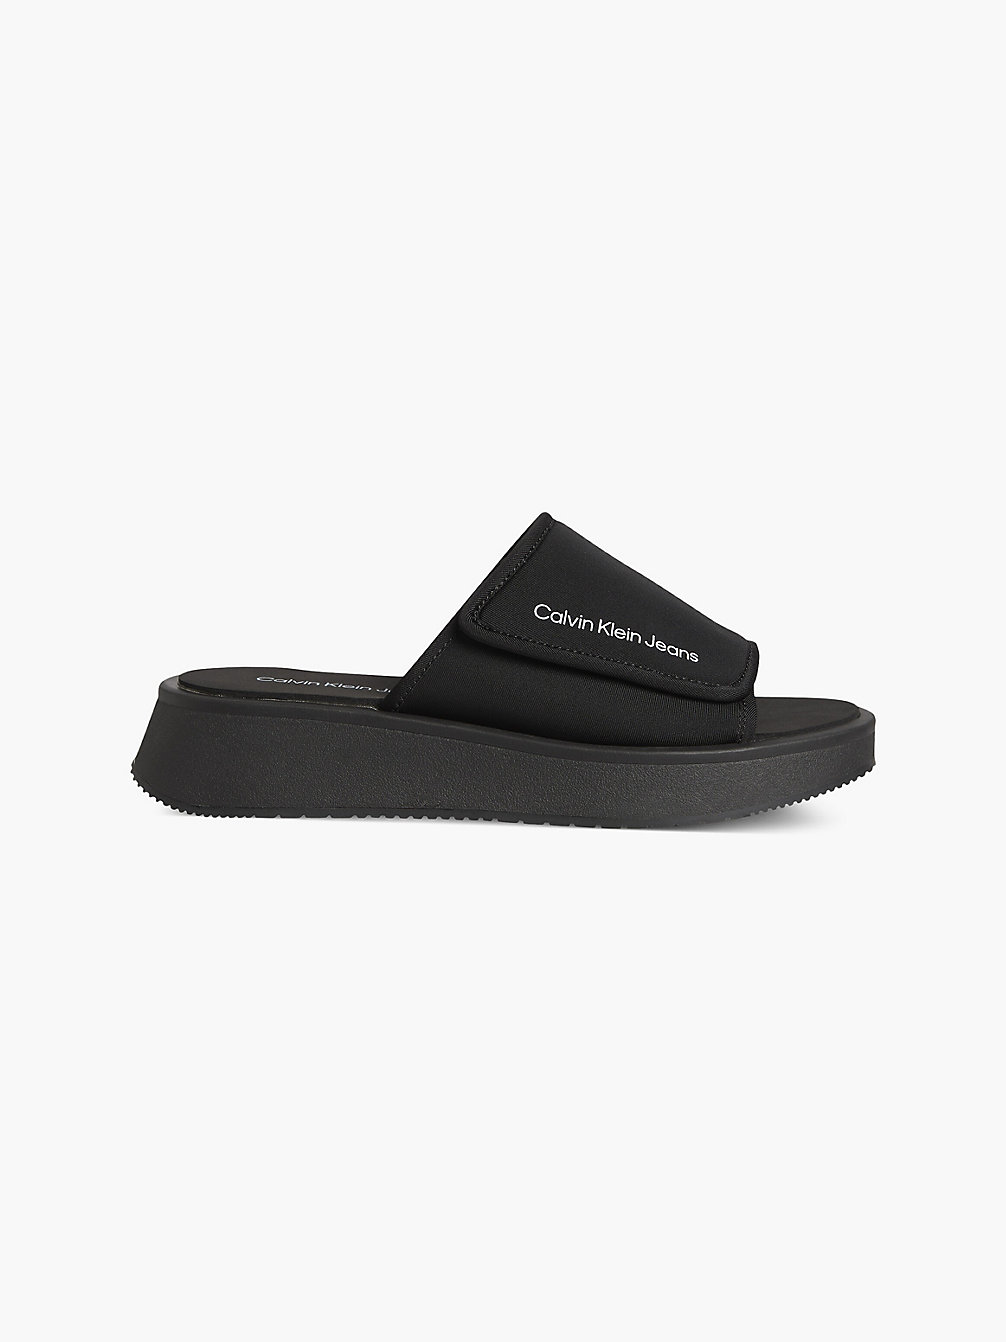 BLACK Recycled Neoprene Platform Wedge Sandals undefined women Calvin Klein